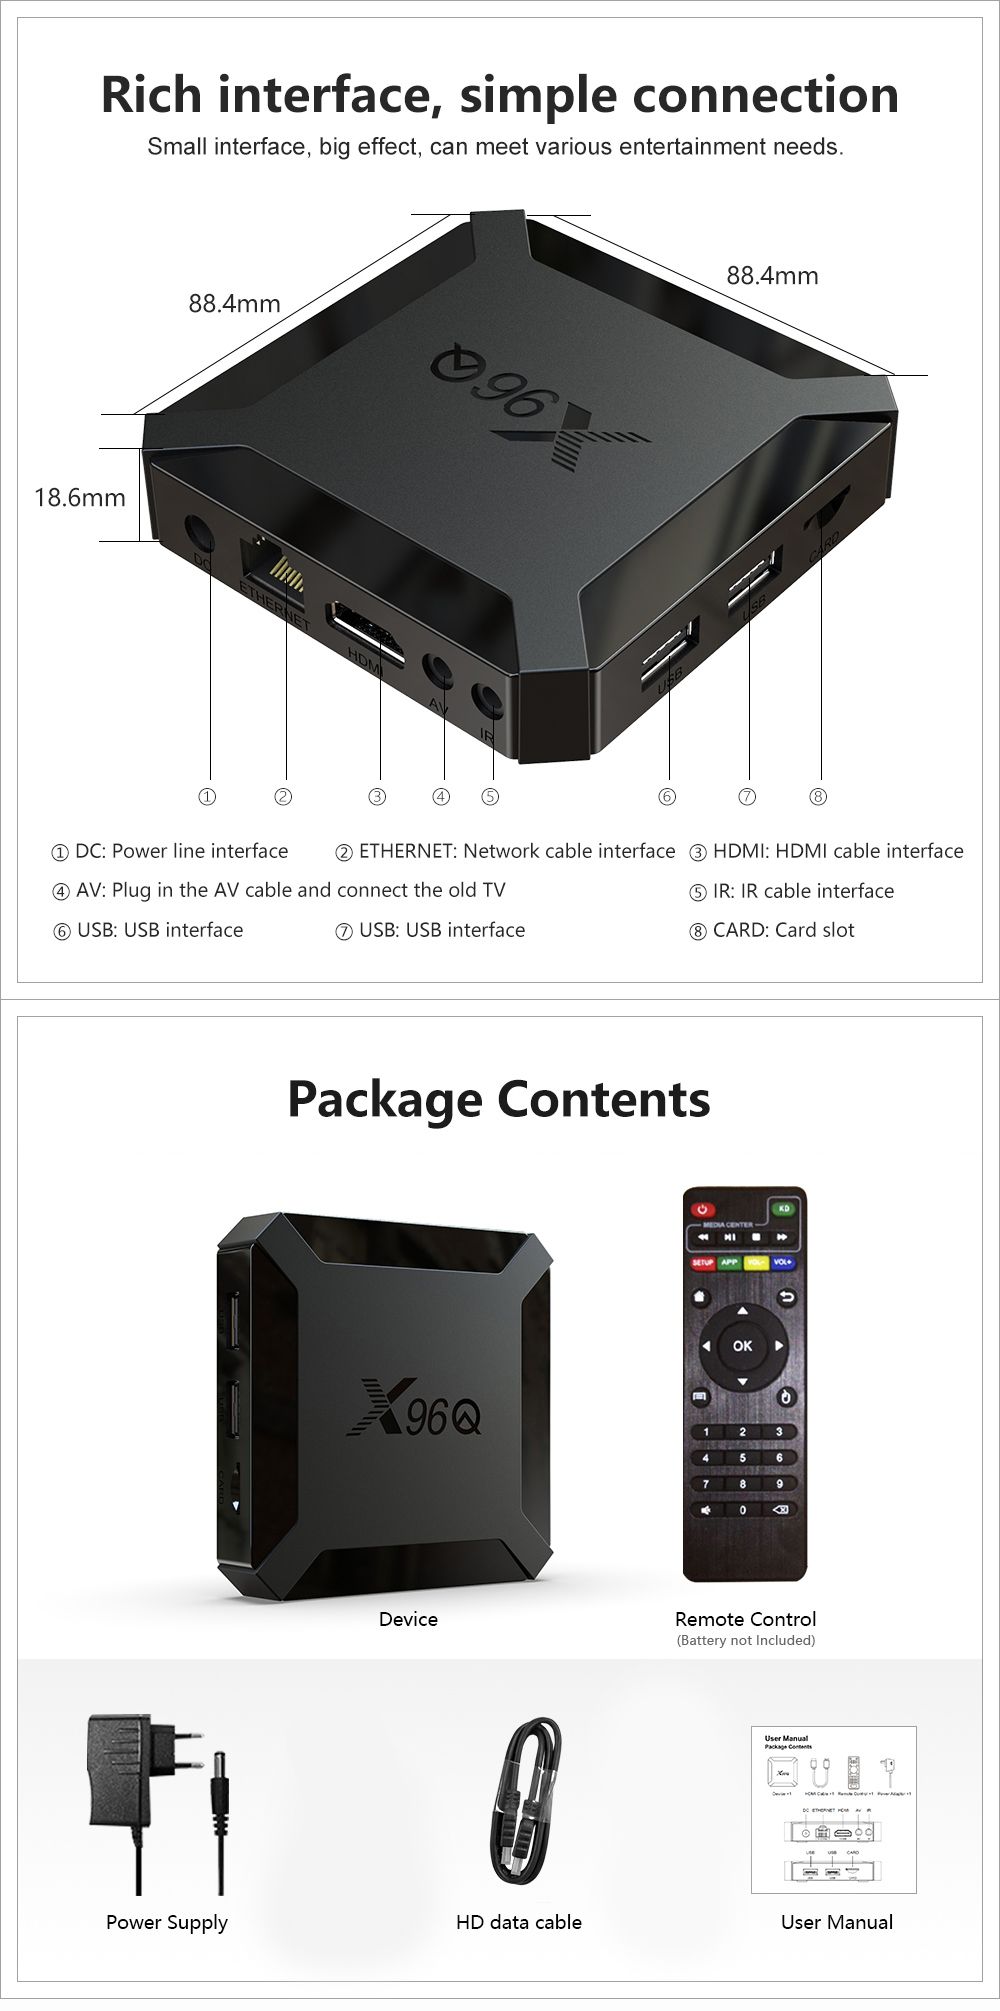 X96Q-Allwinner-H313-Quad-Core-Android-100-DDR3-2GB-RAM-eMMC-16GB-ROM-4K-TV-Box-1666538